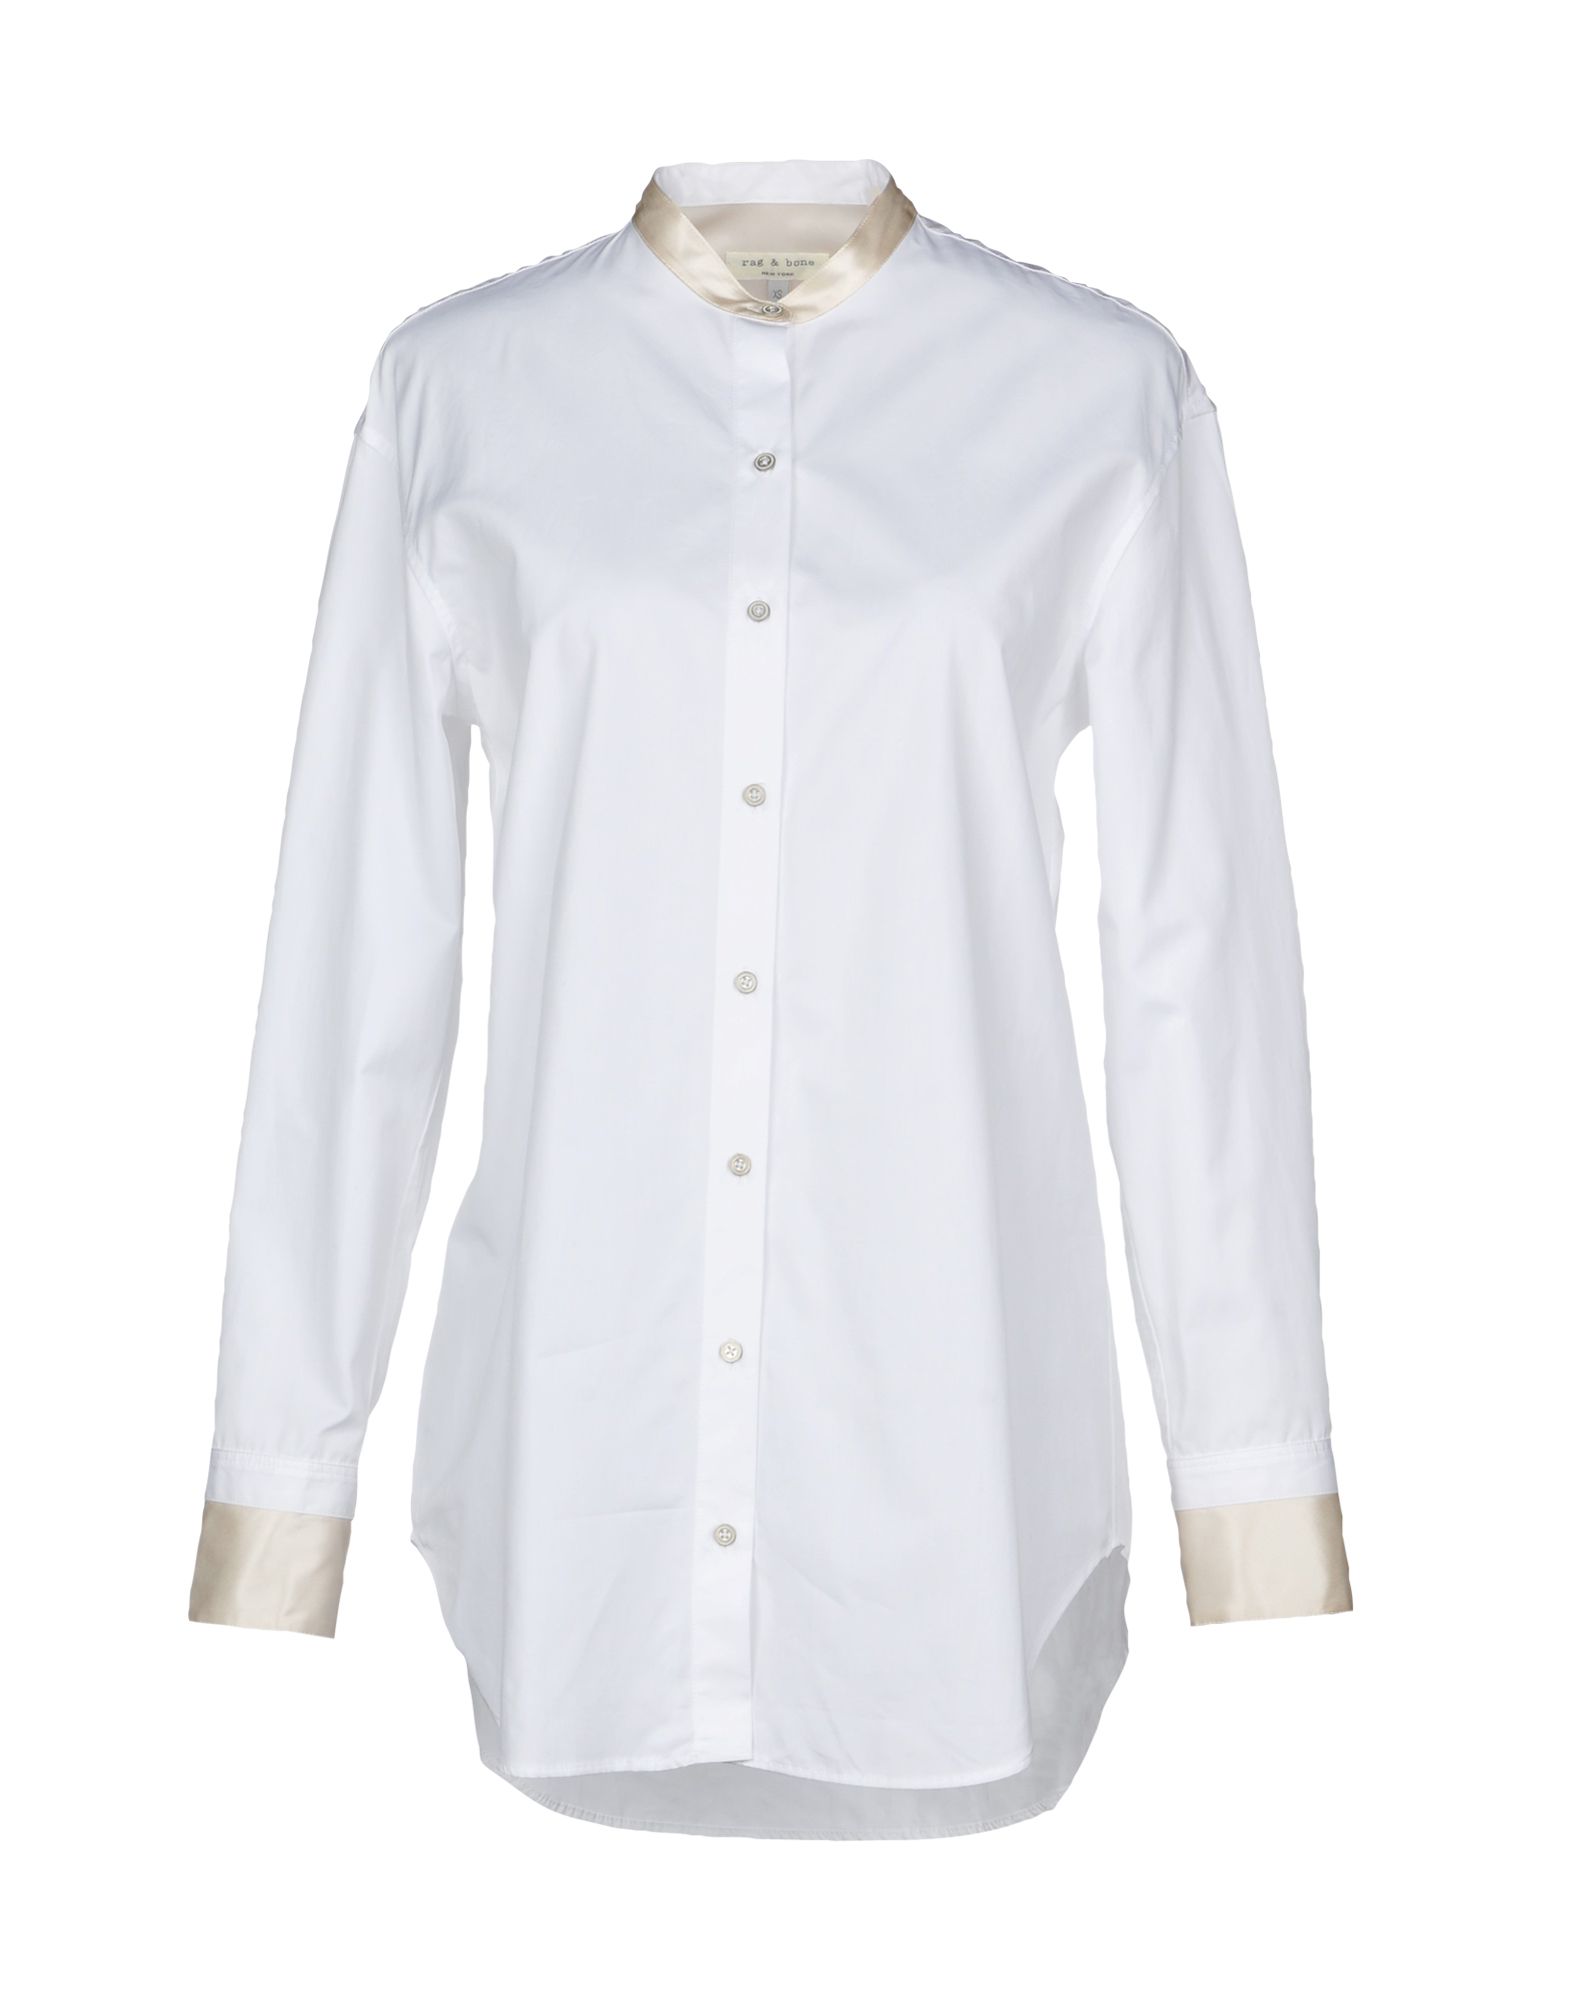 RAG & BONE Solid color shirts & blouses,38722274VK 3